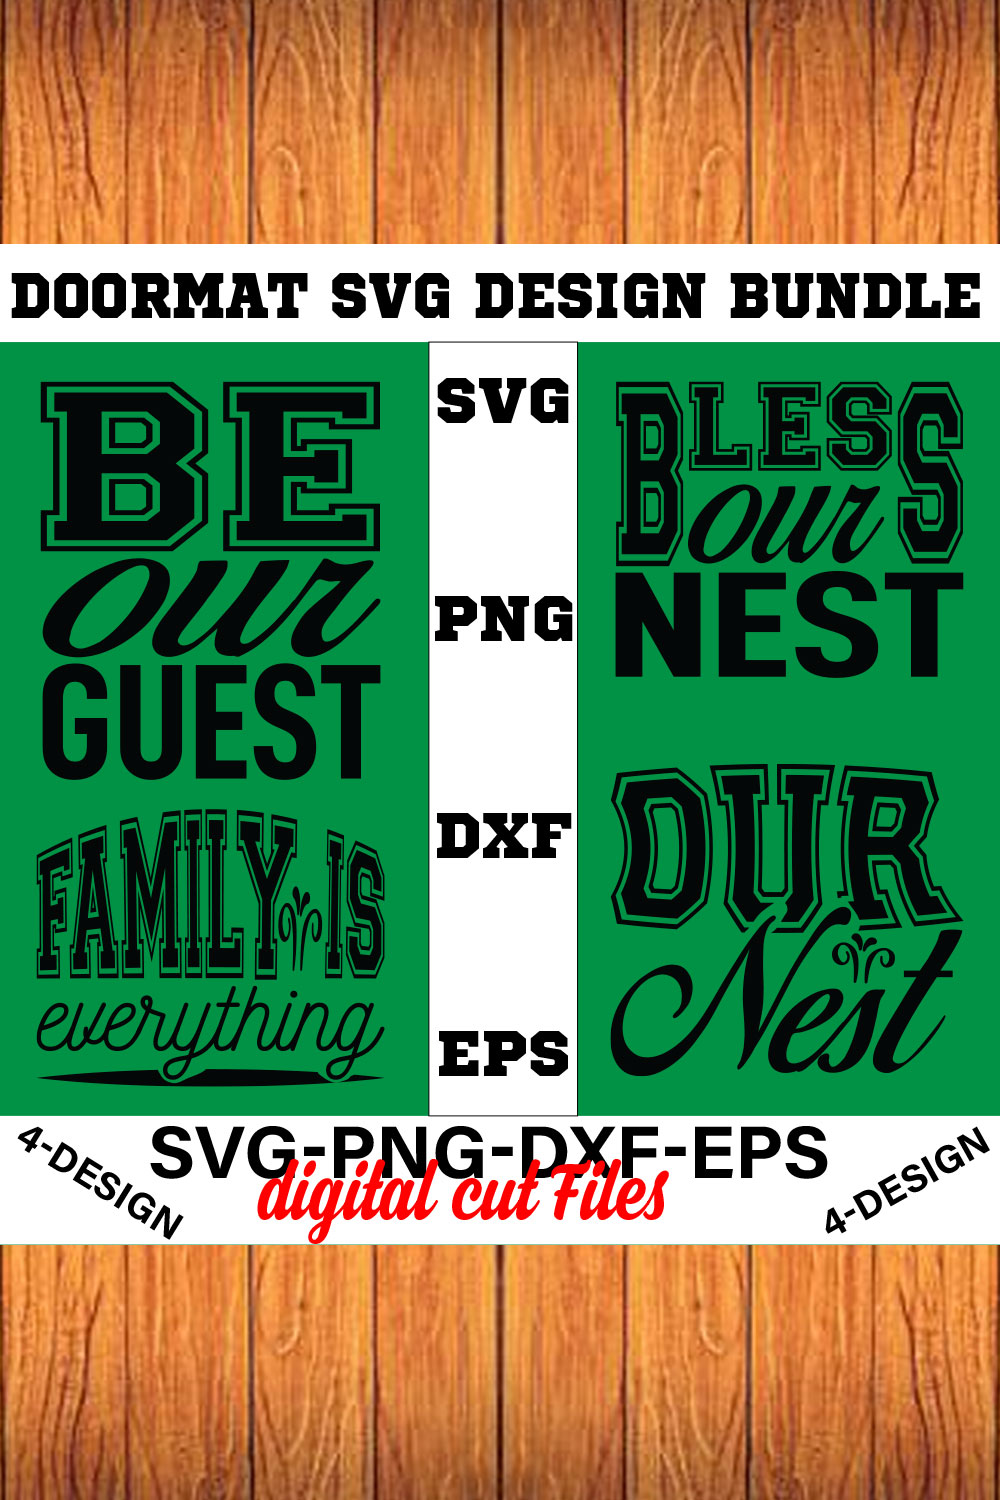 Doormat Quote Designs SVG Cut File Bundle for Cricut Volume-03 pinterest preview image.